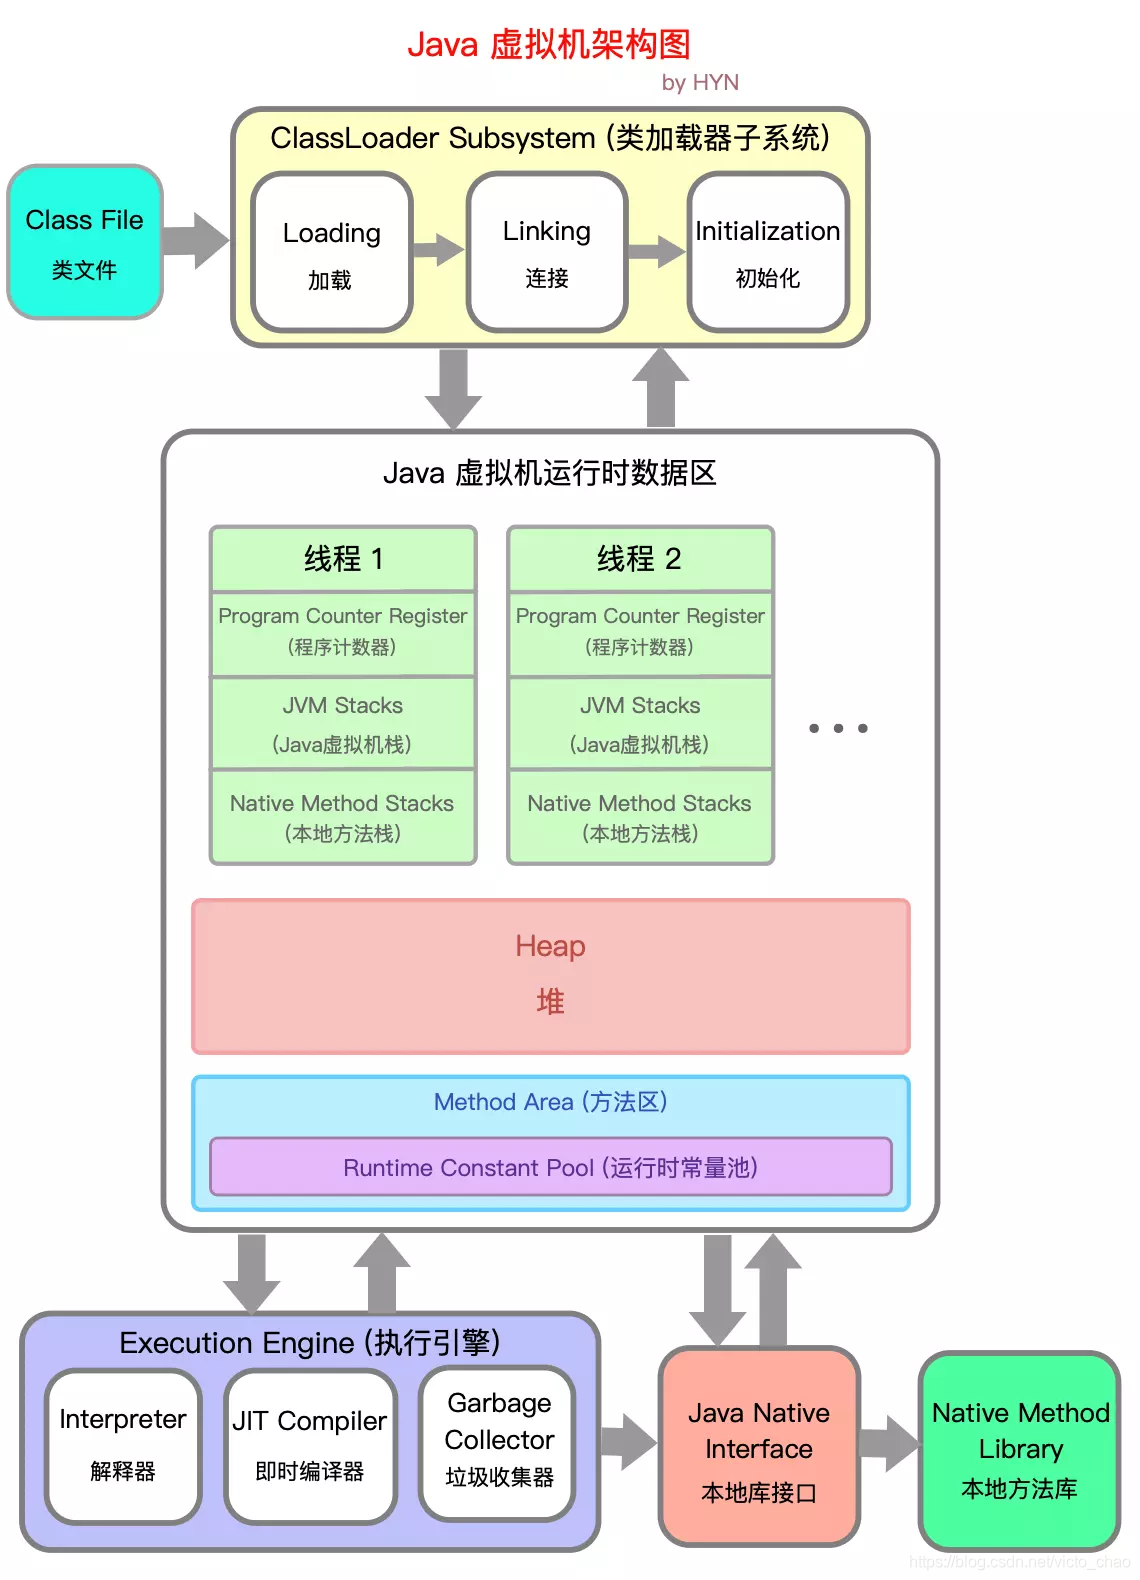 User jvm args txt. Архитектура java. JVM архитектура. Общая архитектура виртуальных машин. JVM машина.